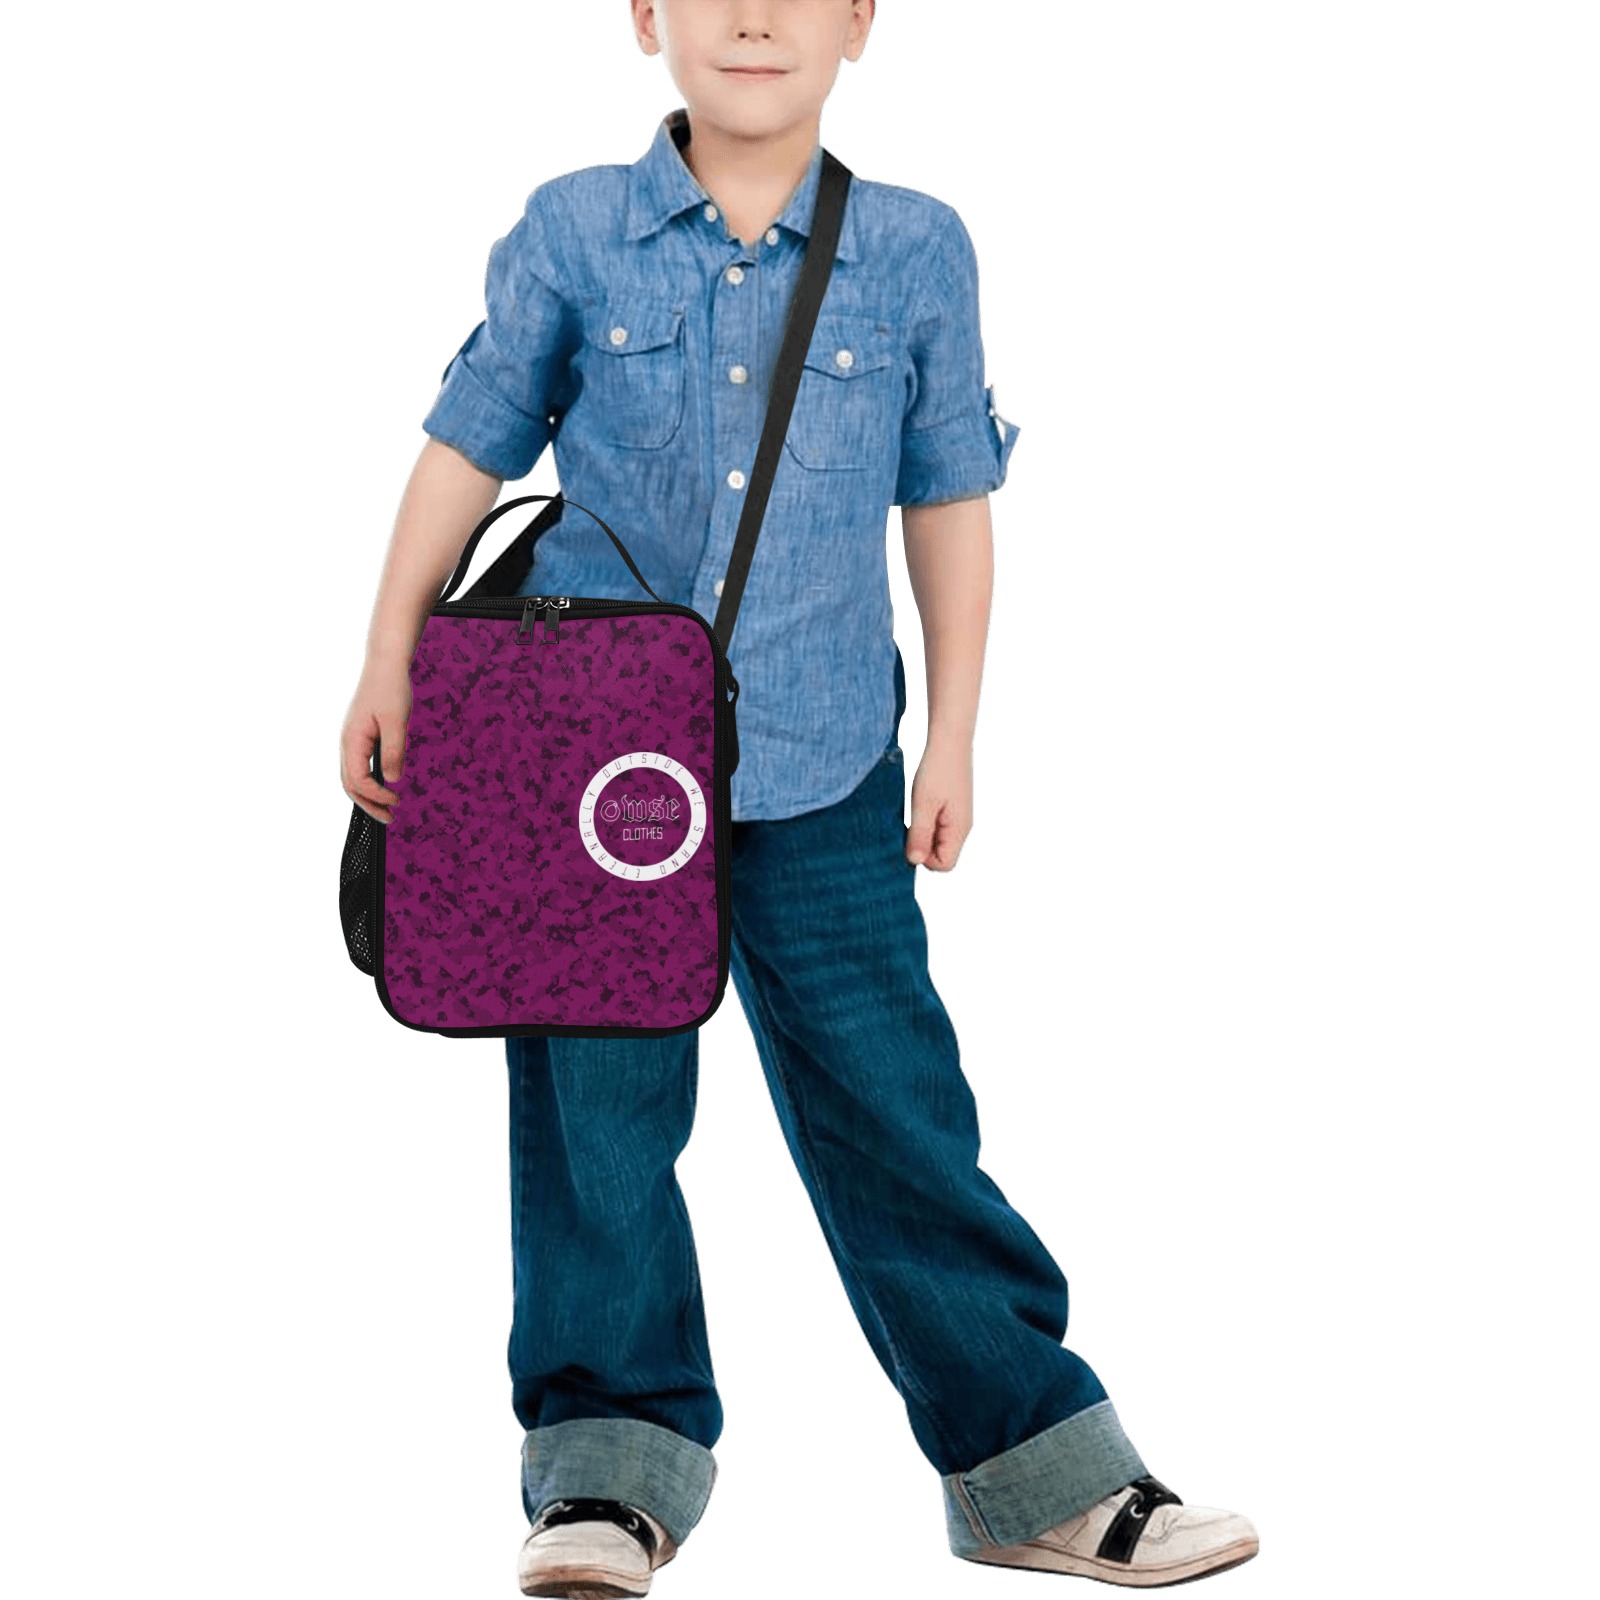 26869305_173132219862155_7699949447655981056_n-gigapixel-scale-2_00x-gigapixel-scale-2_00x-gigapixel Crossbody Lunch Bag for Kids (Model 1722)